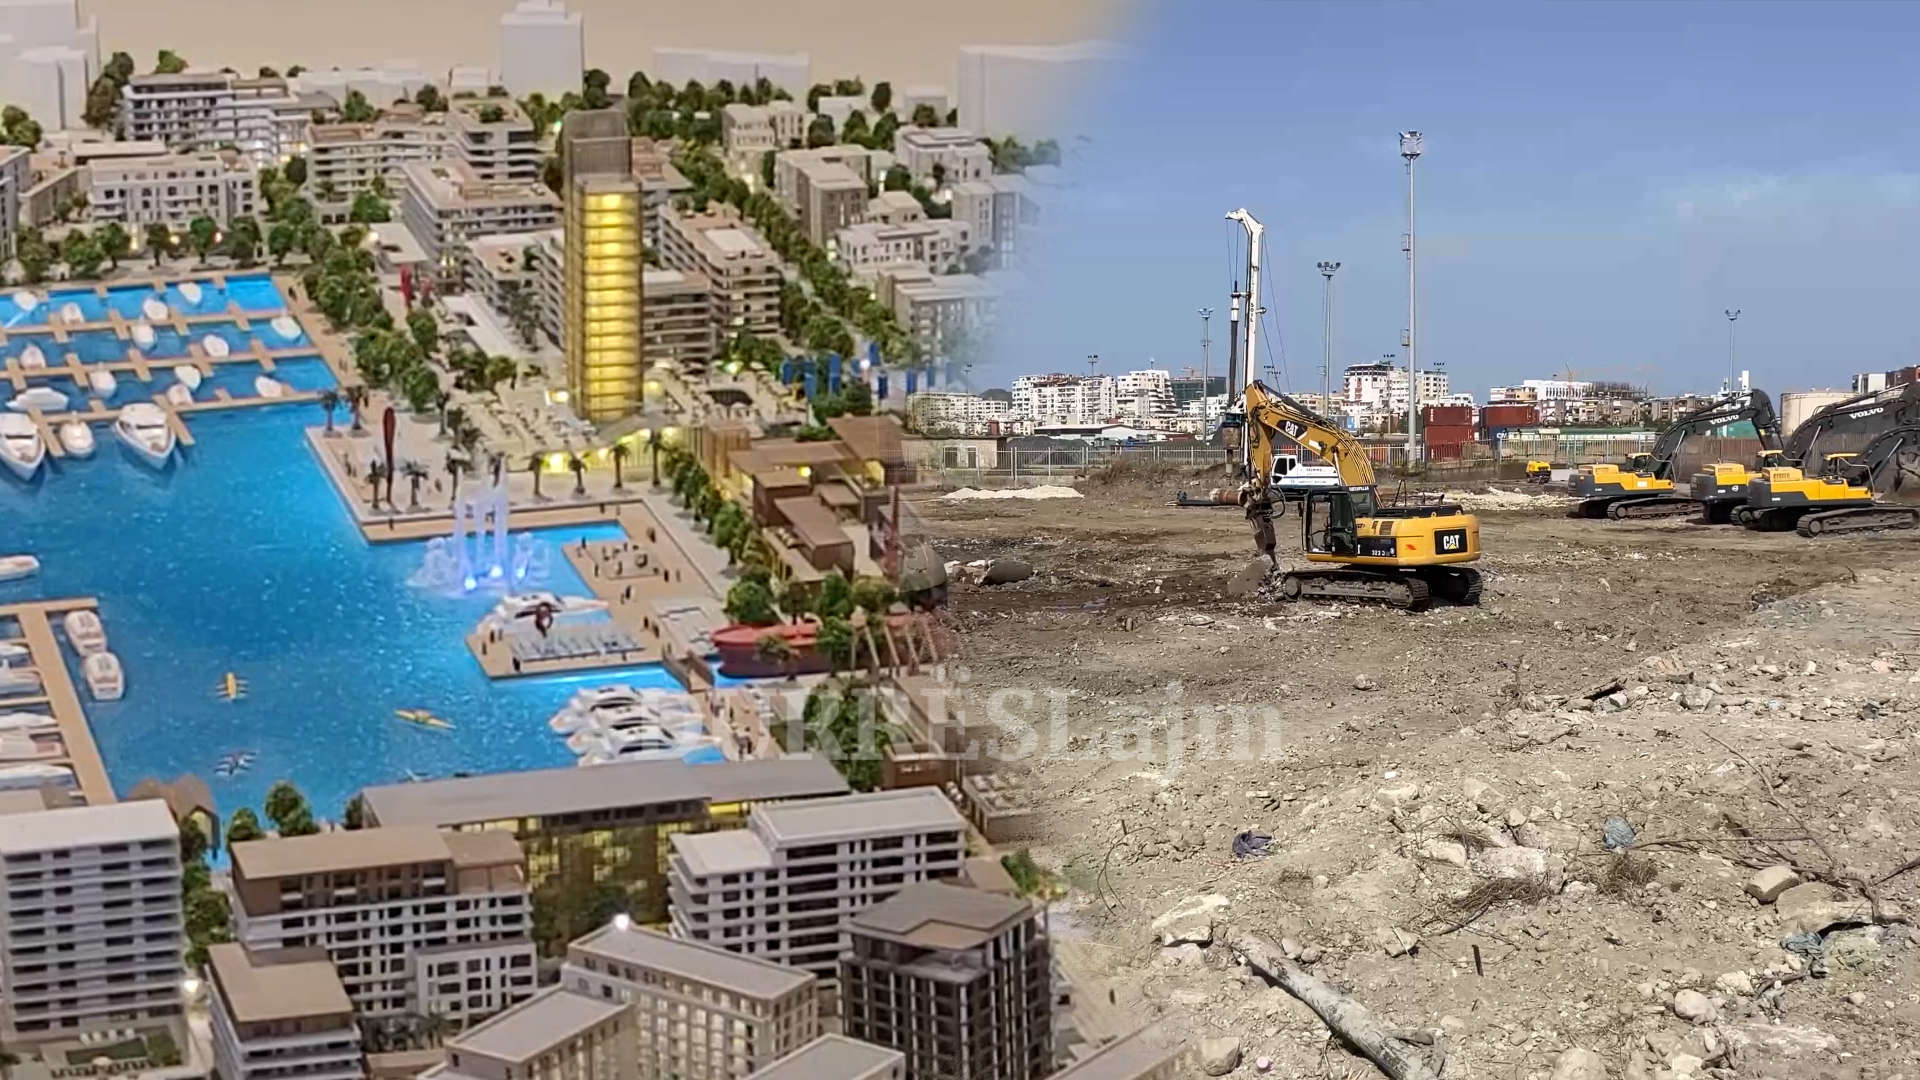 Projekti 2 mld euro “Durrës Marina”/ Hereni: Faza e parë 5-7 vite, ja kur pritet të përfundojë (VIDEO)